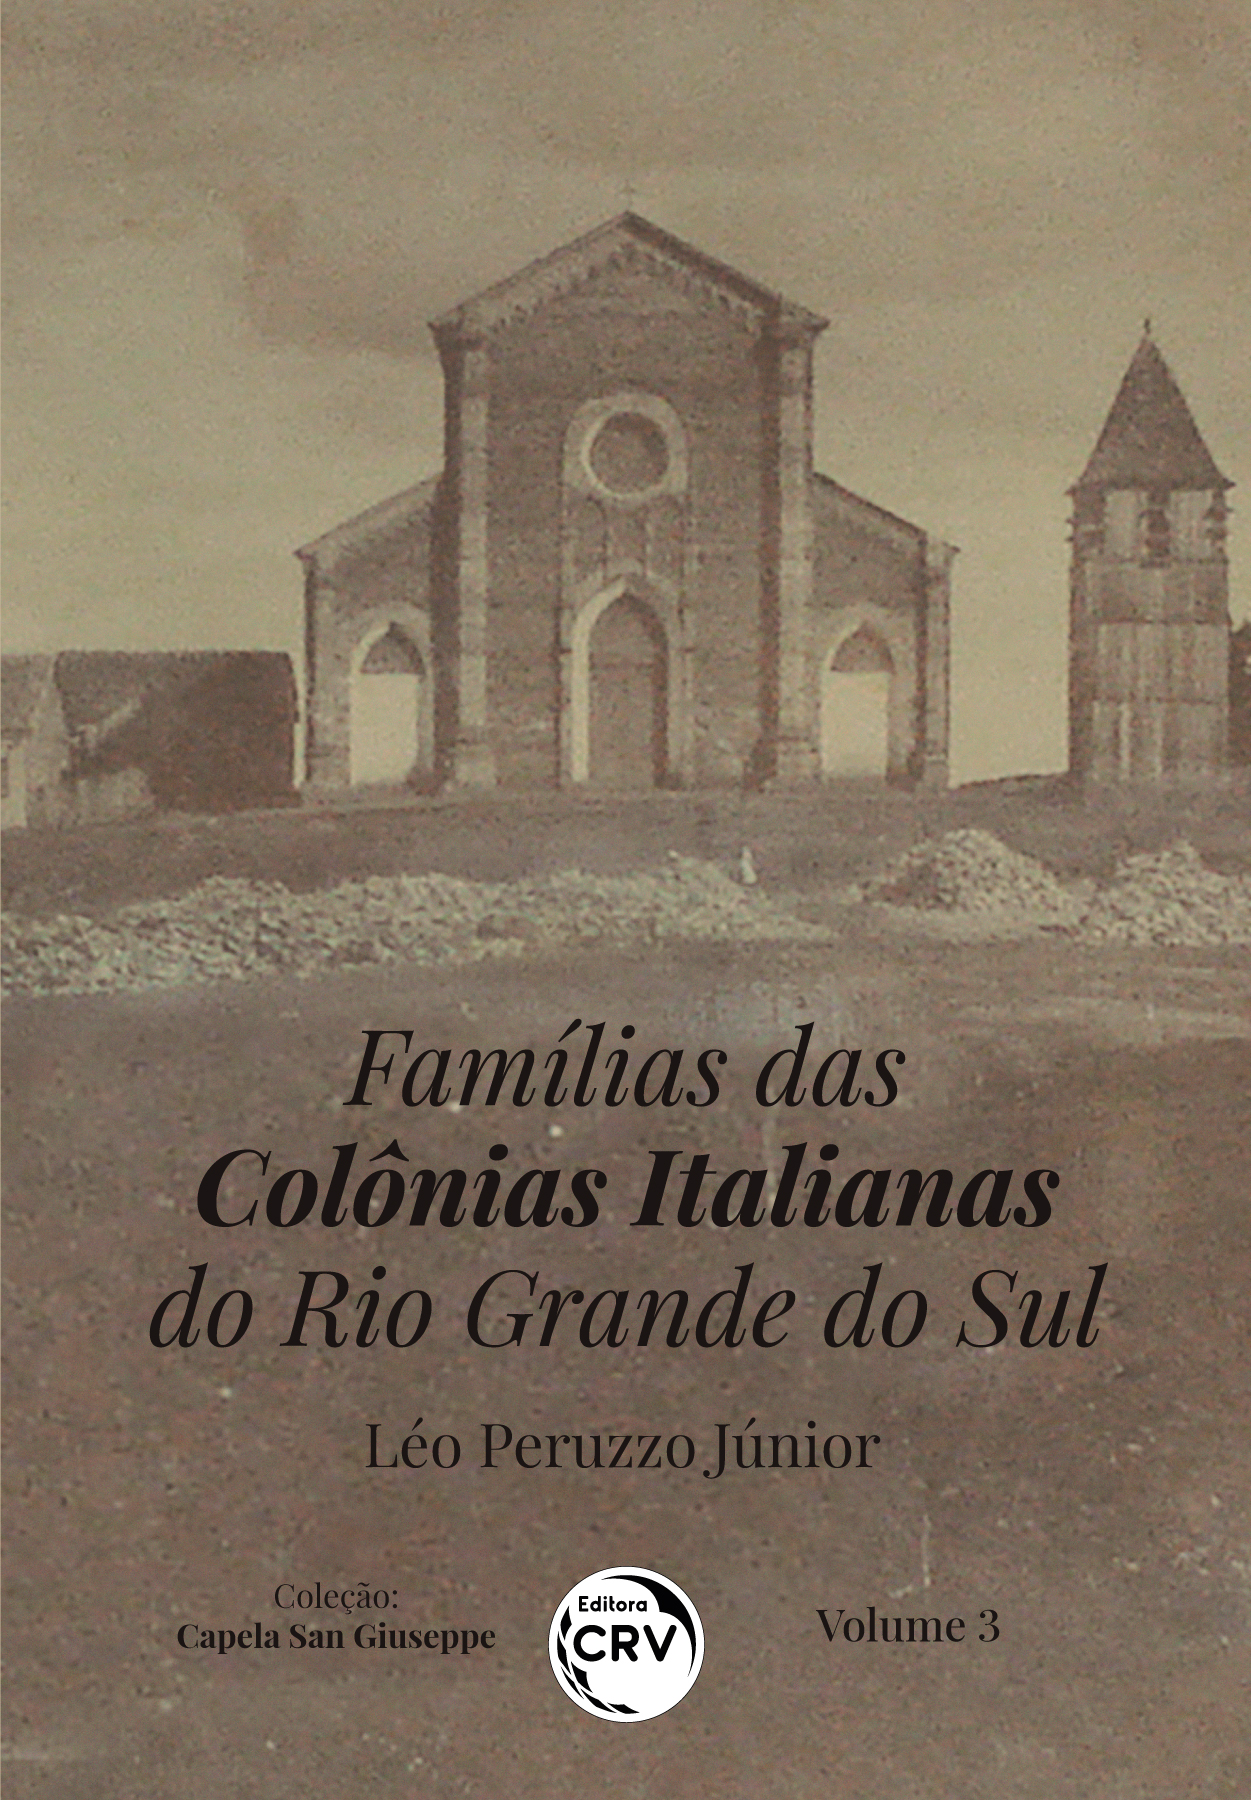 Capa do livro: FAMÍLIAS DAS COLÔNIAS ITALIANAS DO RIO GRANDE DO SUL<br>Coleção: Capela San Giuseppe<br>Volume 3